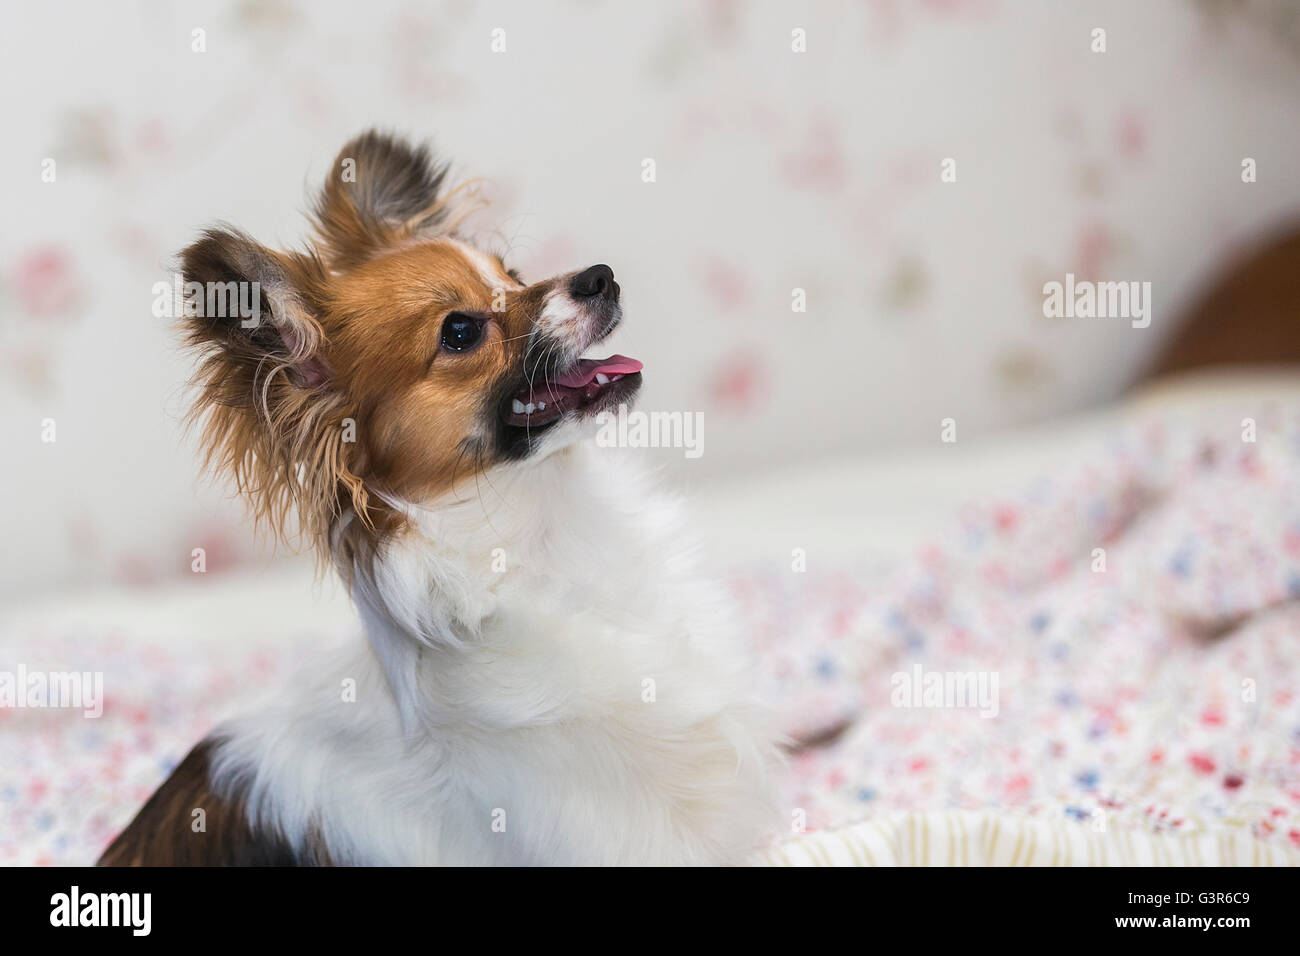 Close-up portrait puppy Papillon dog (Canis lupus familiaris). Stock Photo